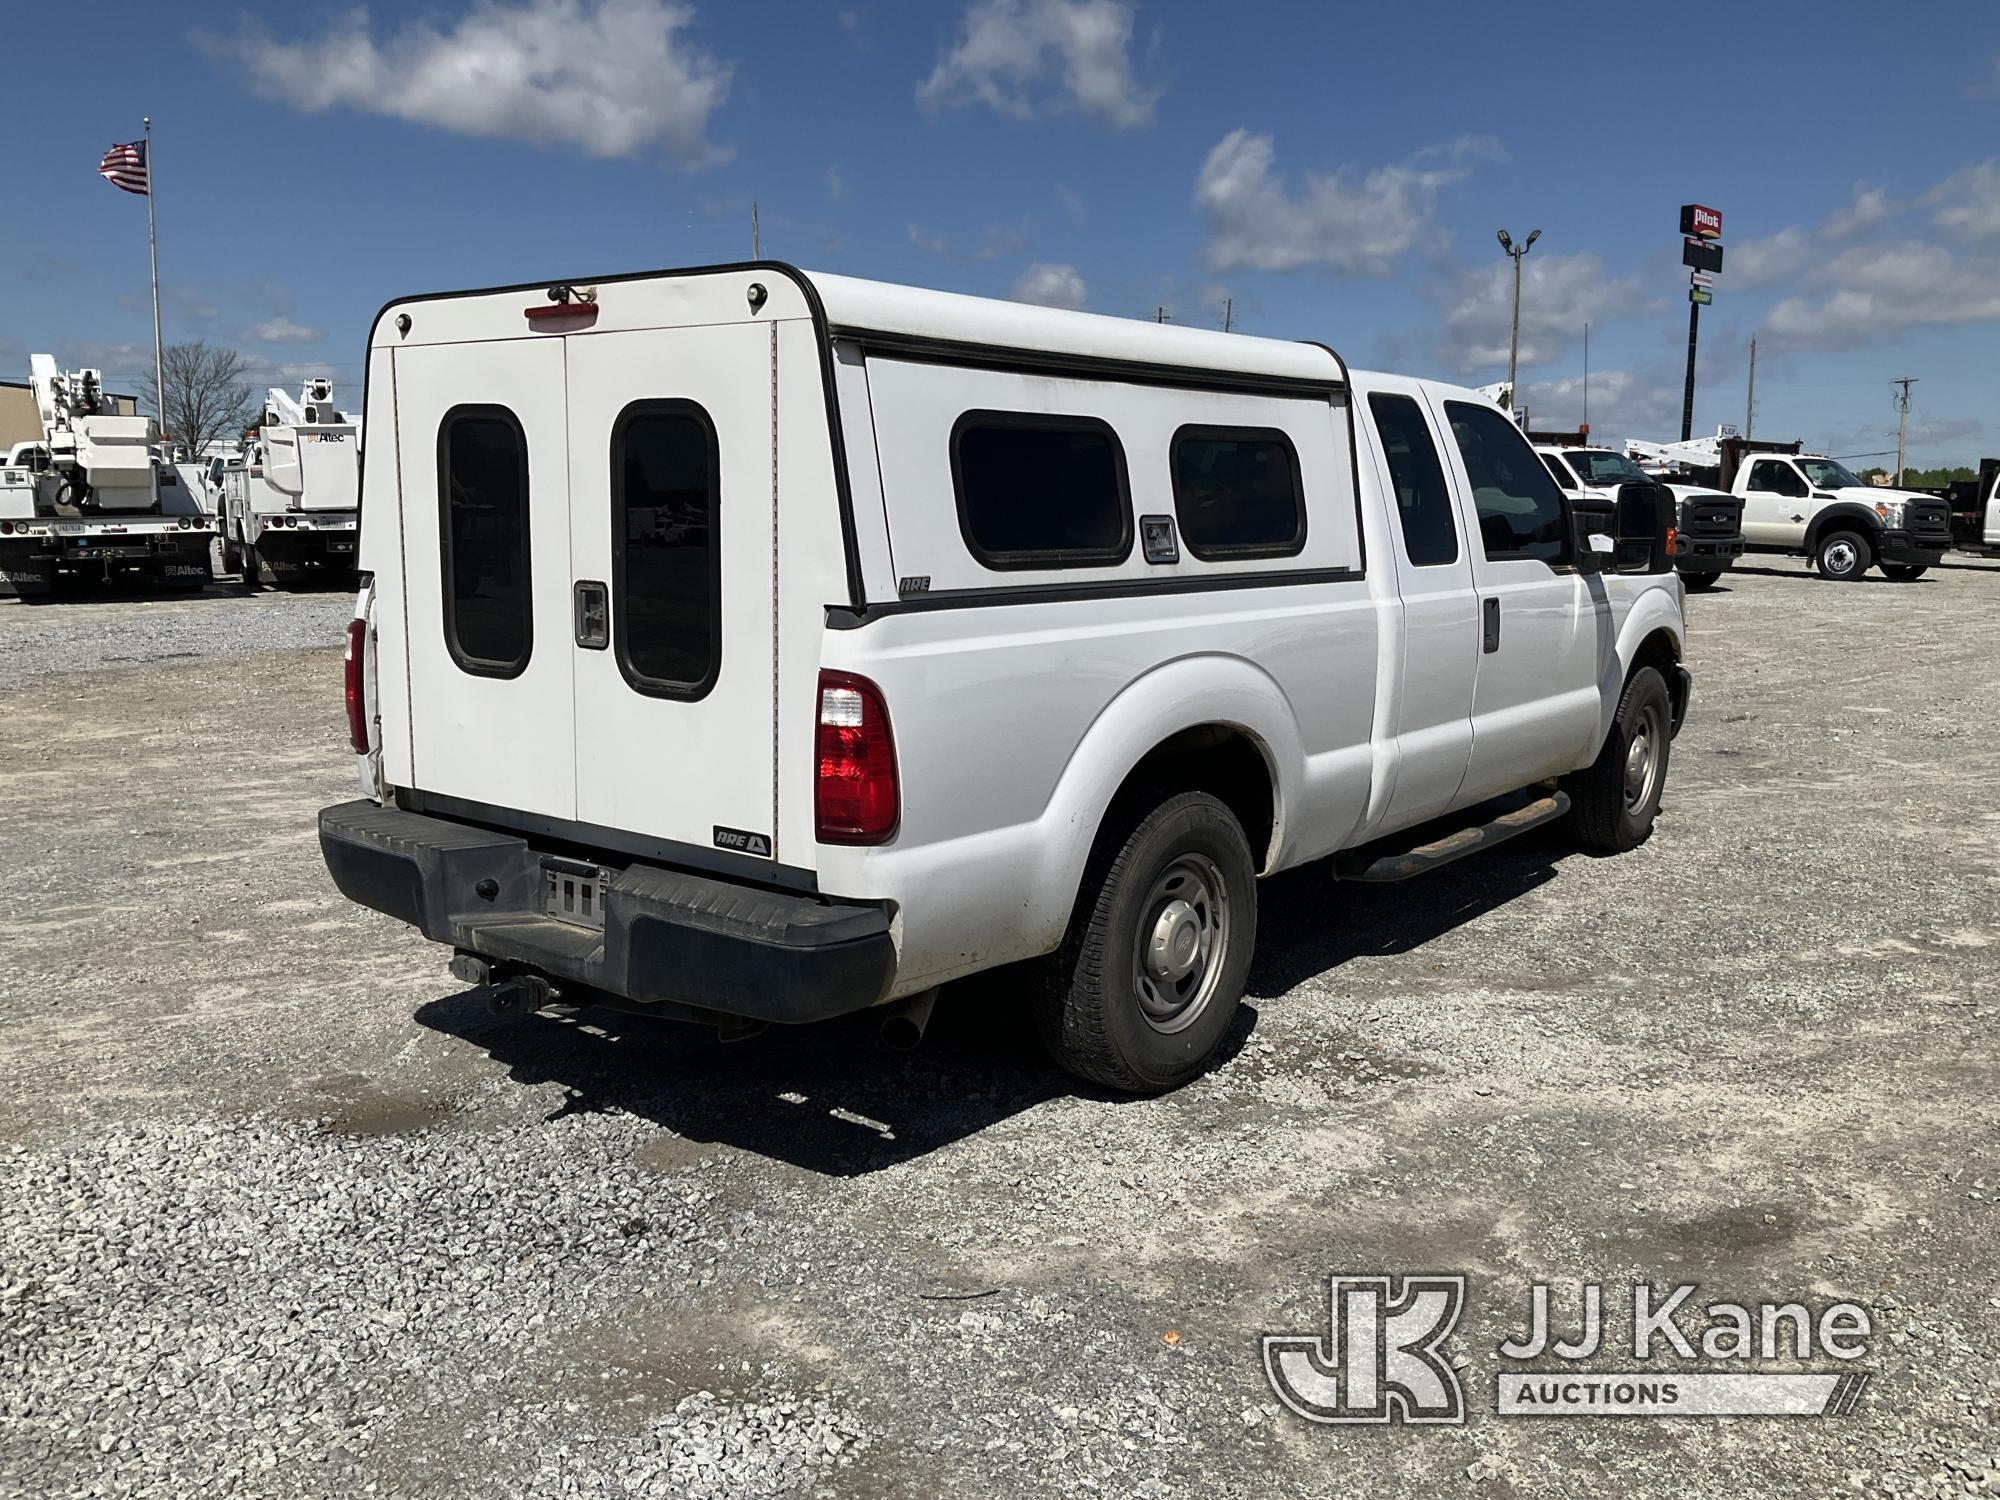 (Villa Rica, GA) 2015 Ford F250 Extended-Cab Pickup Truck, (GA Power Unit) Runs & Moves) (Body Damag